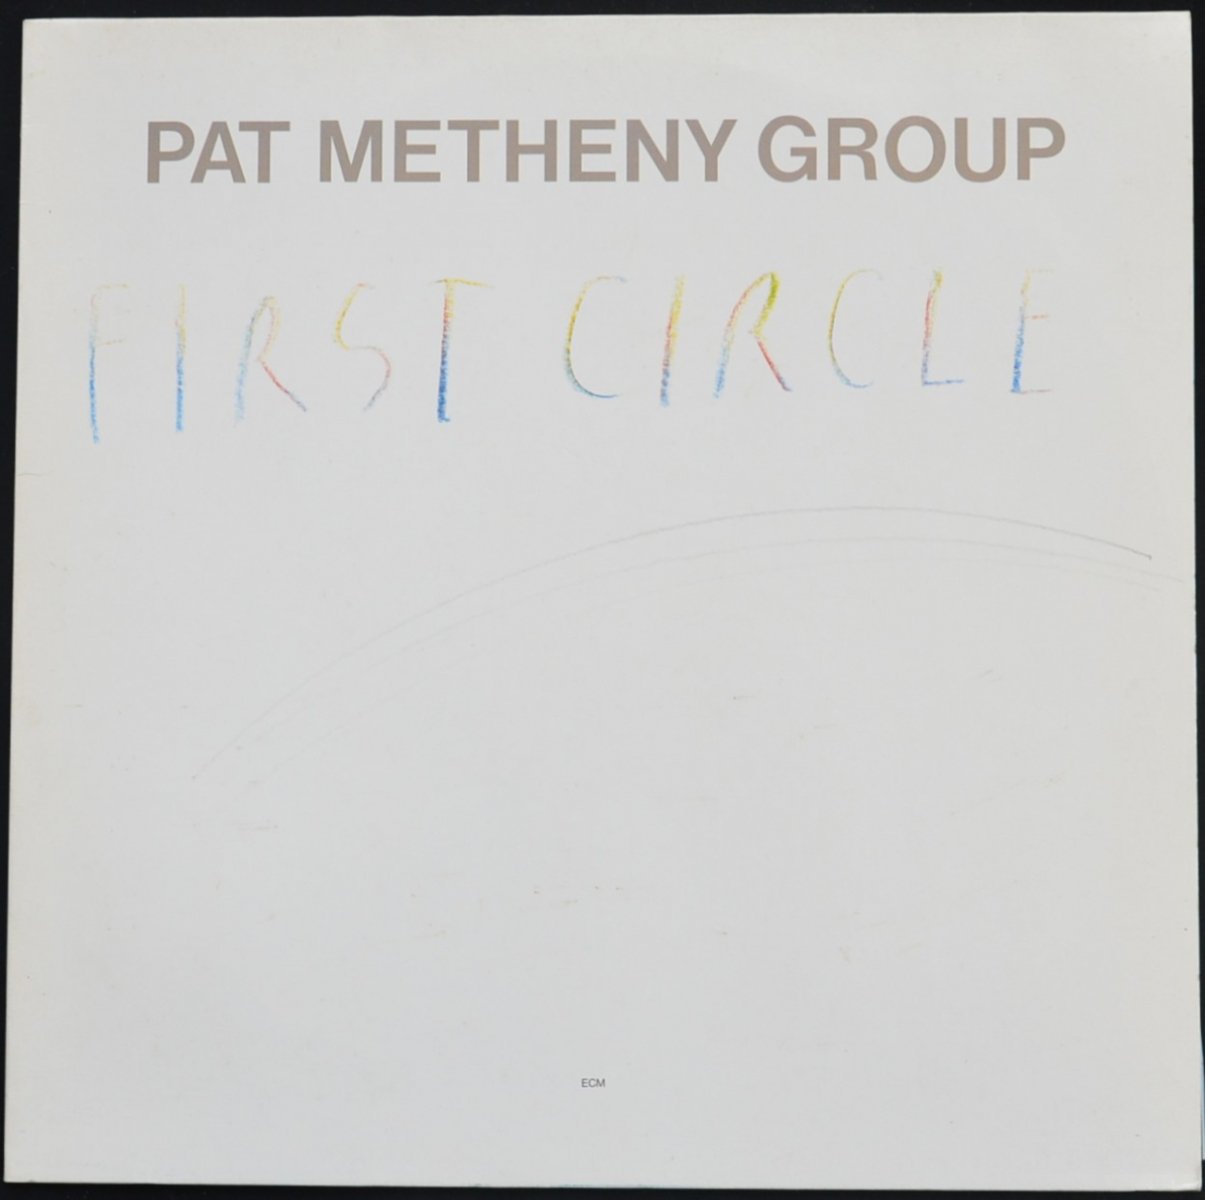 PAT METHENY GROUP ‎/ FIRST CIRCLE (LP)